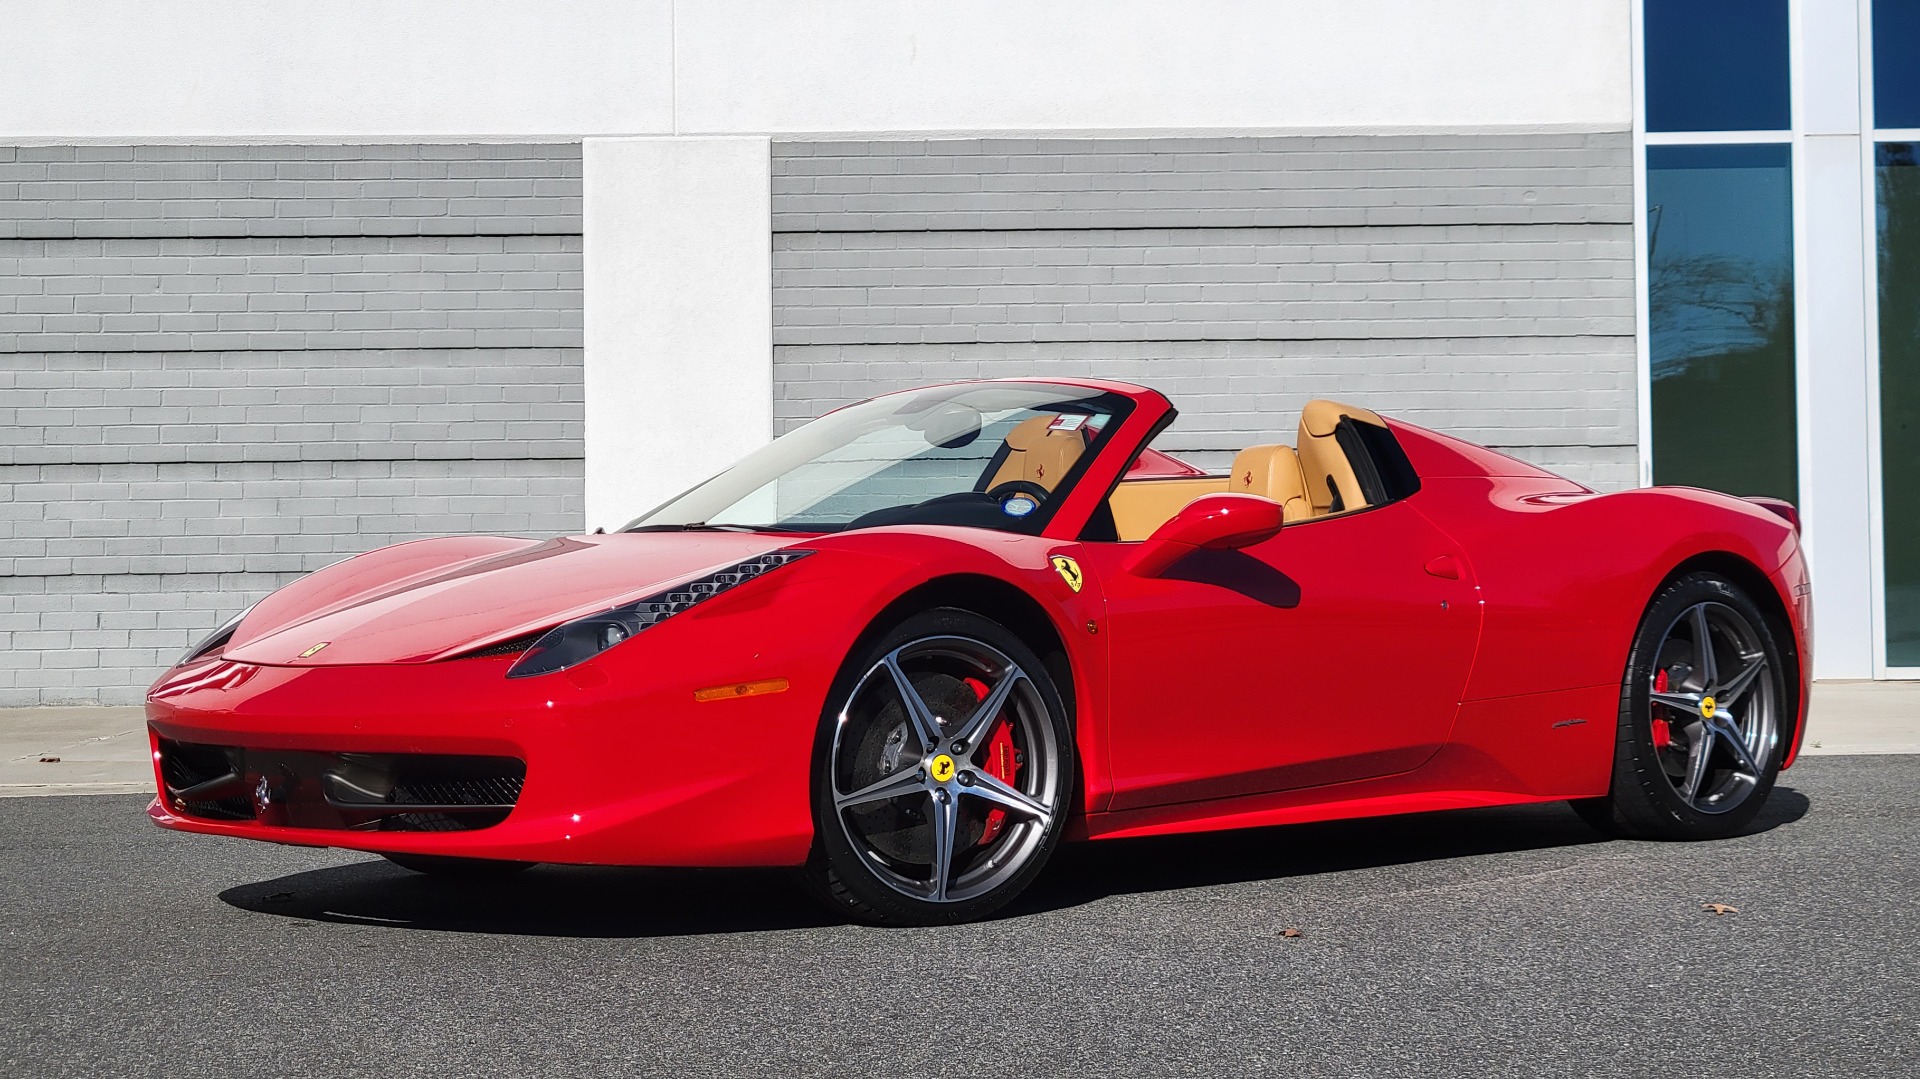 Used 2015 Ferrari 458 ITALIA SPIDER / 4.5L V8 (570HP) / 7-SPD F1 AUTO / RWD / H/K SOUND for sale $297,574 at Formula Imports in Charlotte NC 28227 1